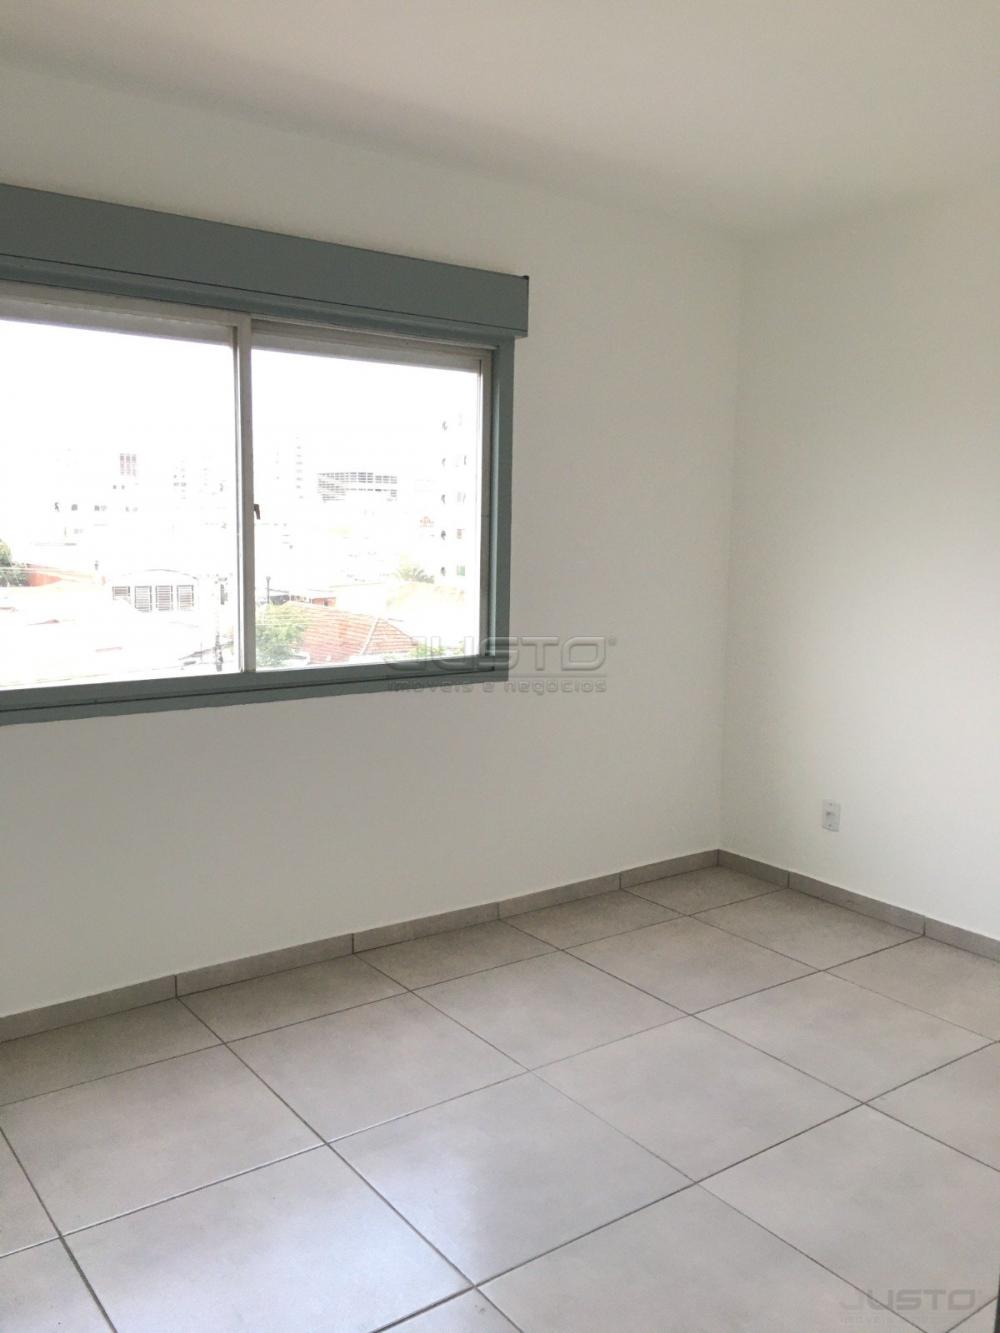 Alugar Apartamento / Padrão em São Leopoldo R$ 650,00 - Foto 1